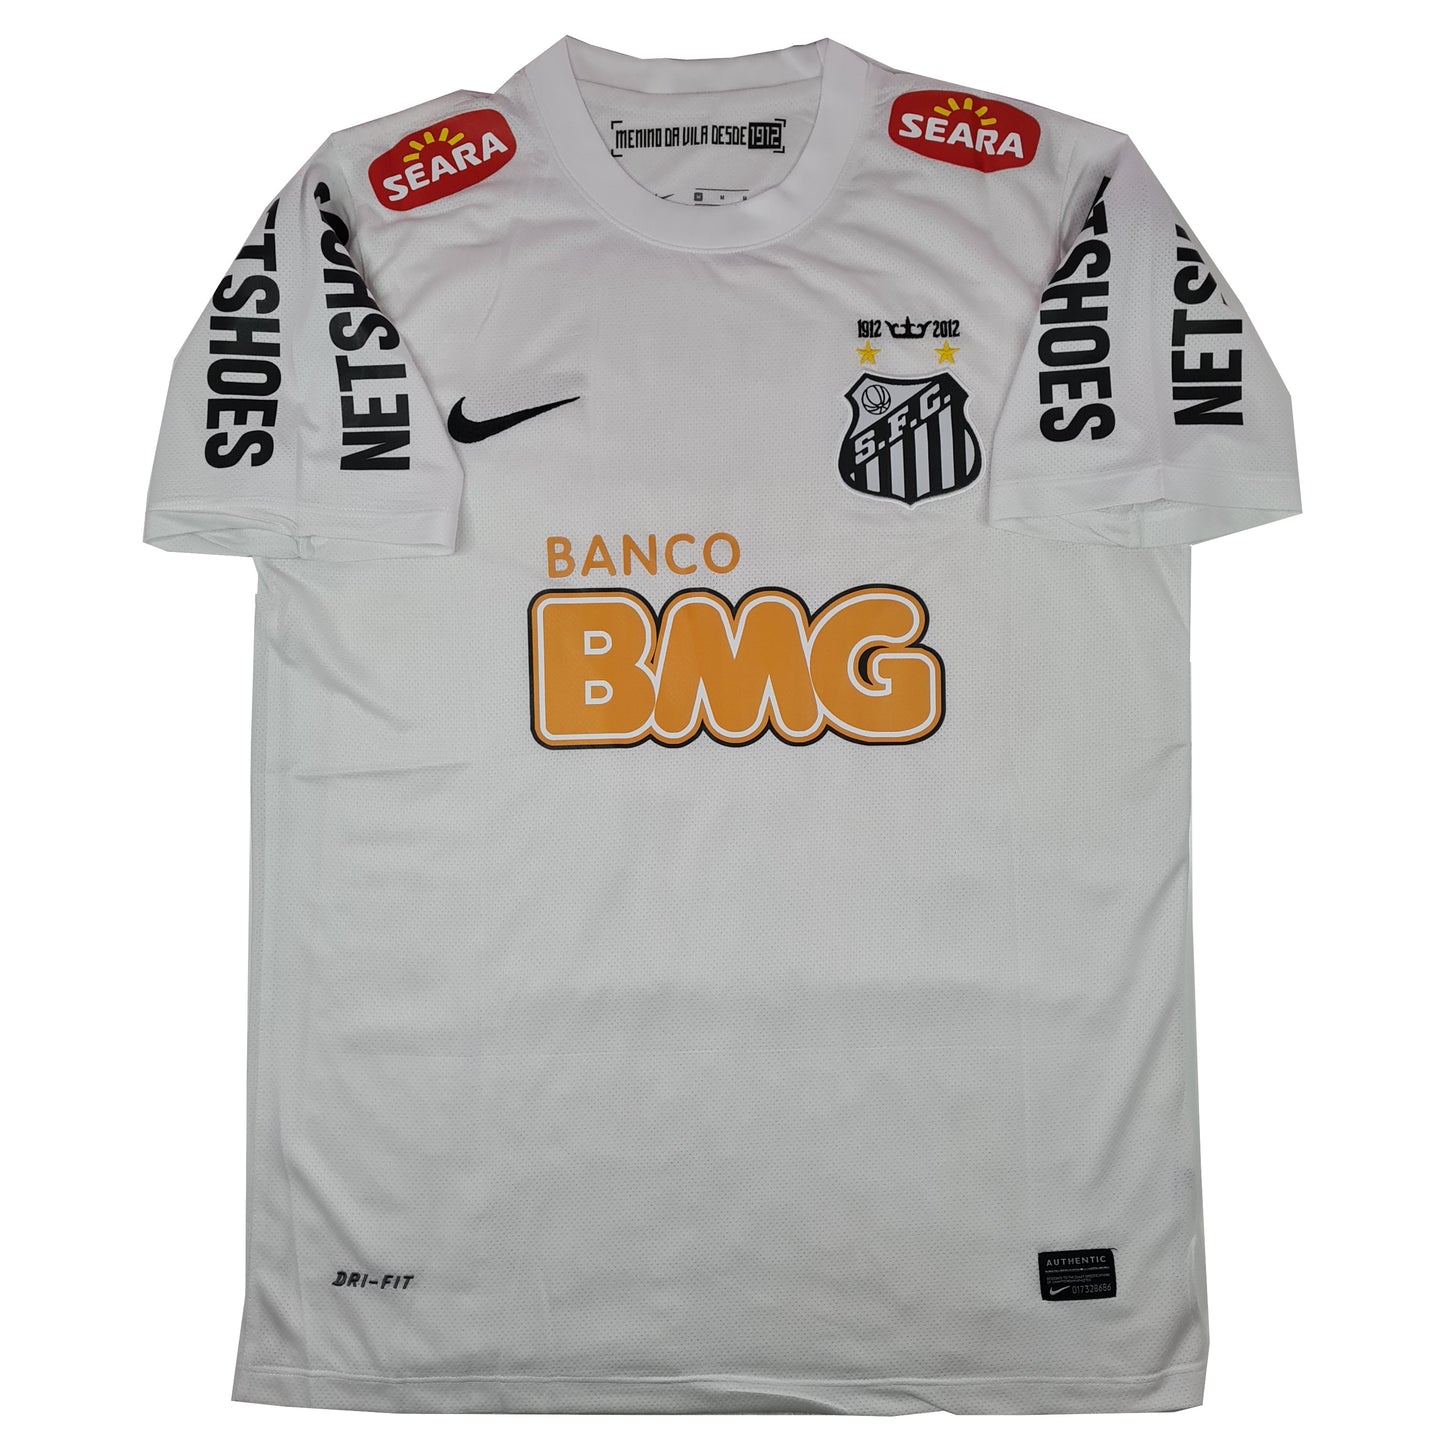 Santos FC Titular 2012/13 ✈️ - Thunder Internacional